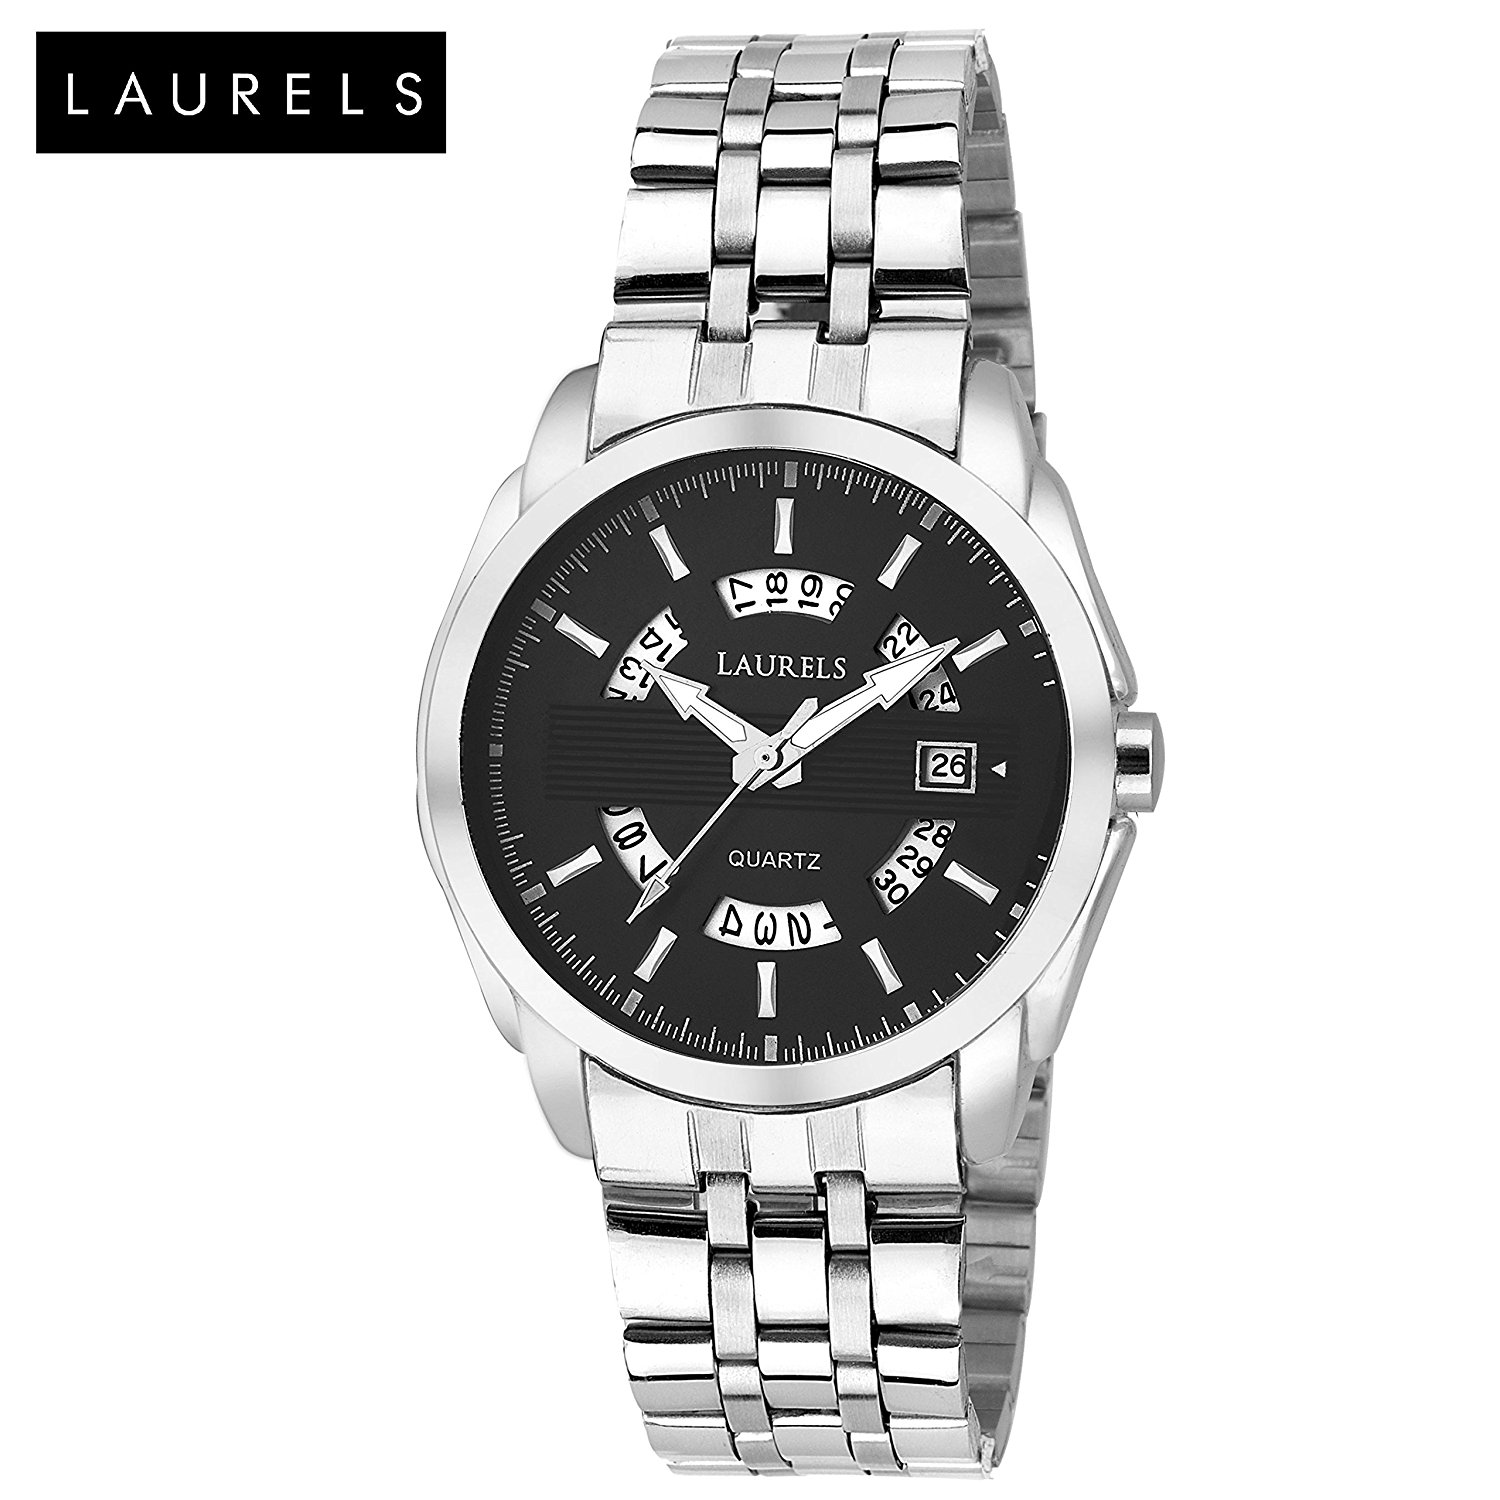 Laurels Aristocrat Black Dial Date Function Wrist Watch-For Men ...